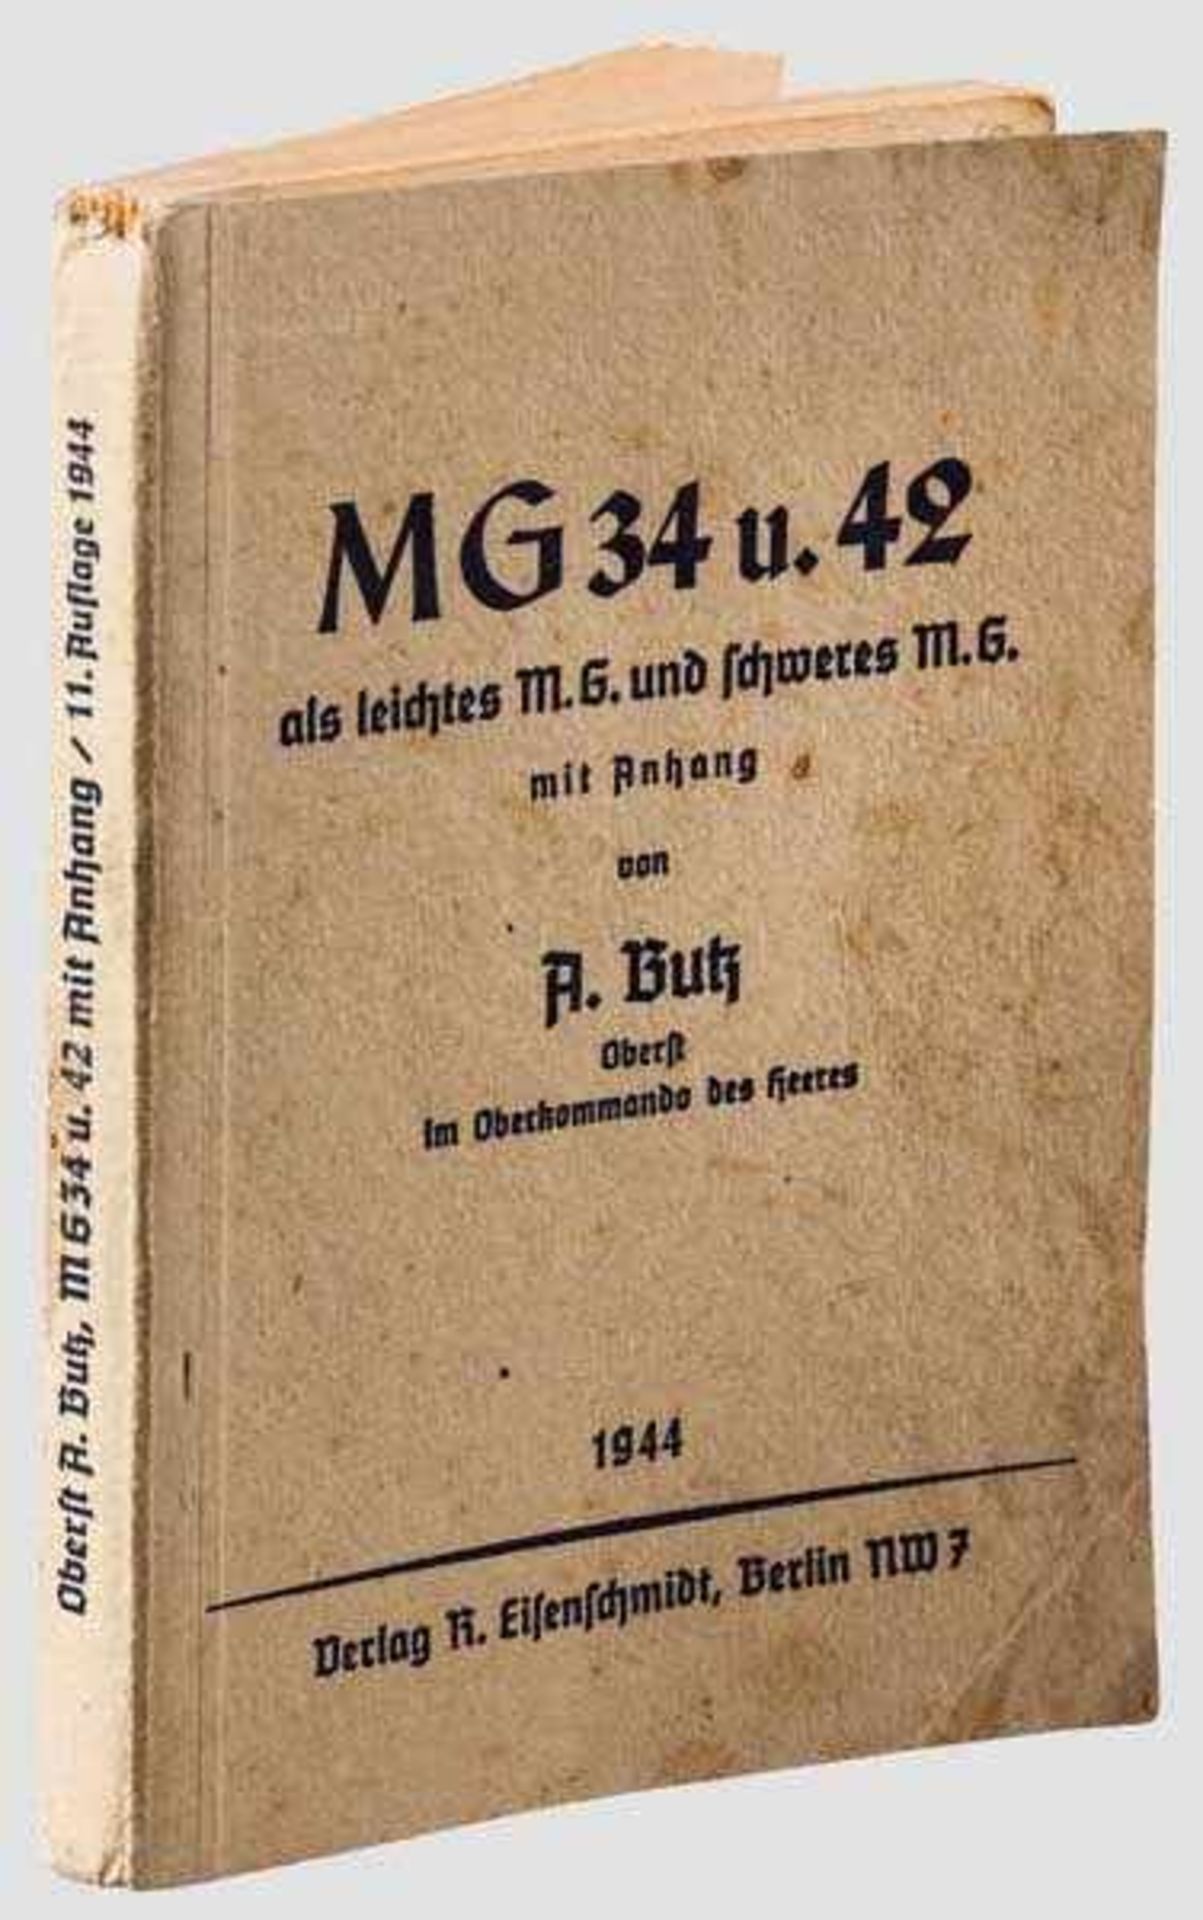 Dienstvorschrift MG 34 / 42 Kartonage-Einband, Herausgeber Oberst Butz im OKH, Verlag Eisenschmidt